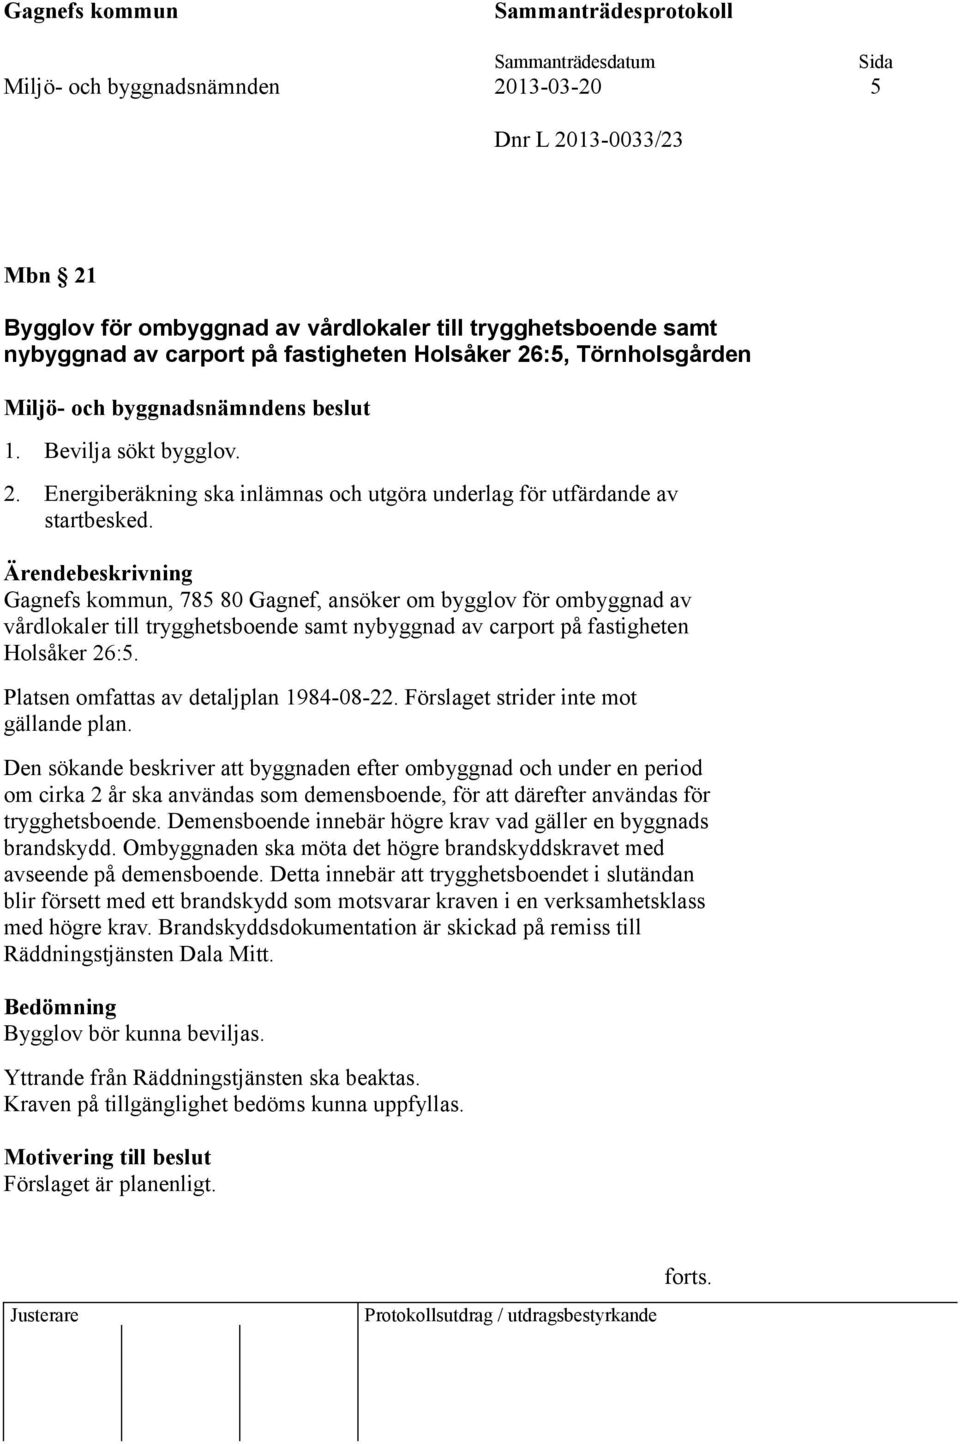 Gagnefs kommun, 785 80 Gagnef, ansöker om bygglov för ombyggnad av vårdlokaler till trygghetsboende samt nybyggnad av carport på fastigheten Holsåker 26:5. Platsen omfattas av detaljplan 1984-08-22.